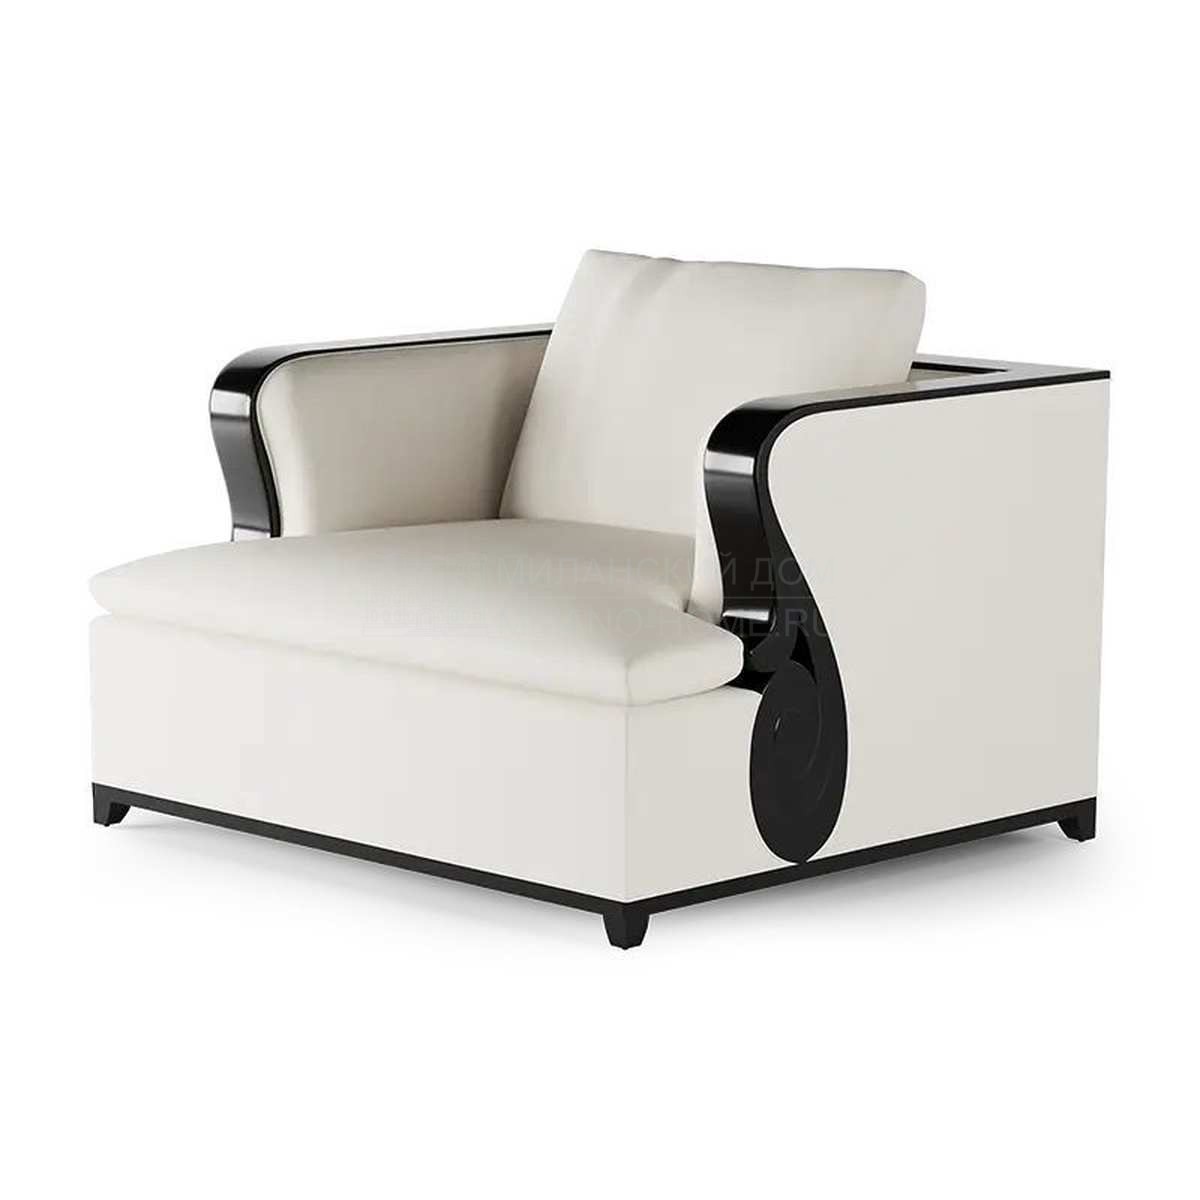 Кресло The Hepburn armchair из США фабрики CHRISTOPHER GUY